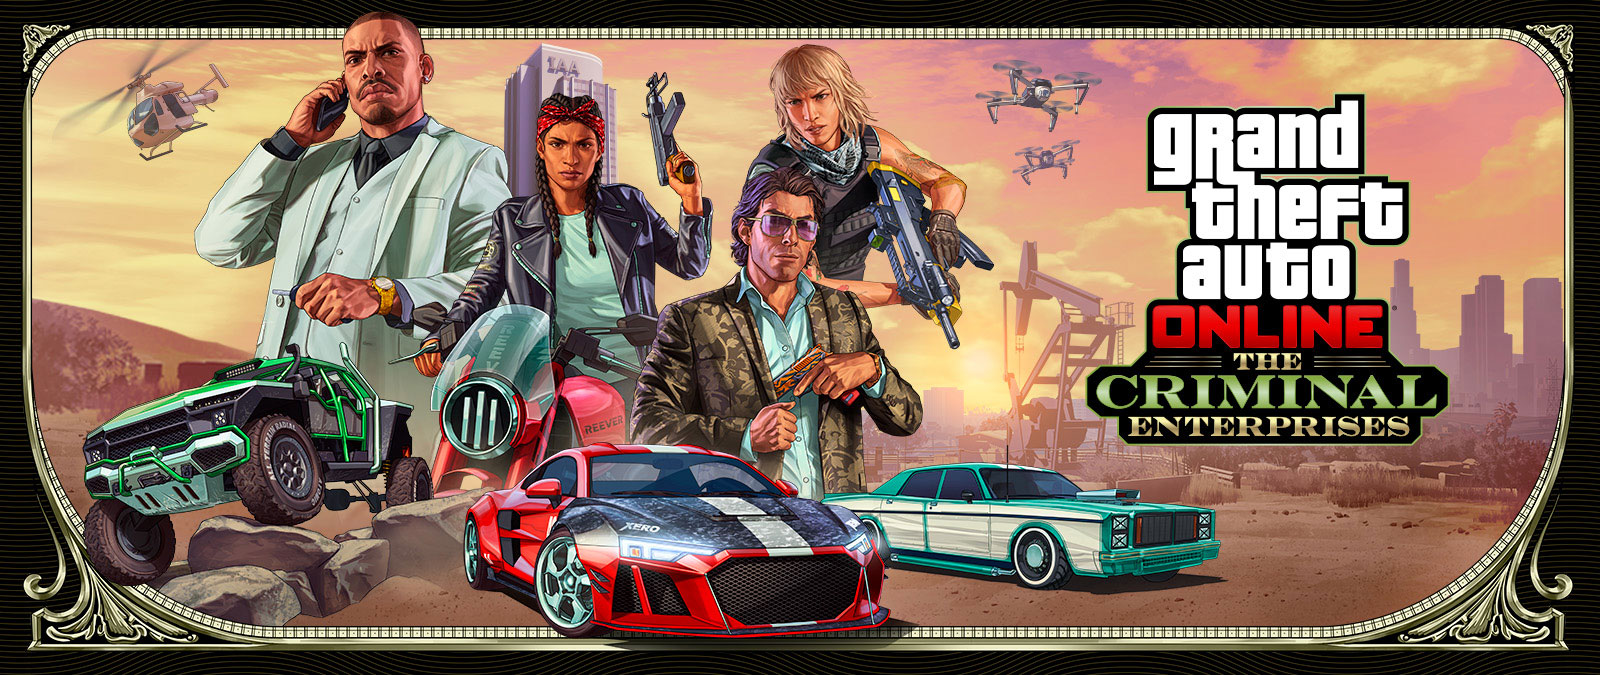 Grand Theft Auto Online: The Criminal Enterprises, Tre stilfulde køretøjer kører gennem forgrunden, mens fire karakterer poserer ovenfor.